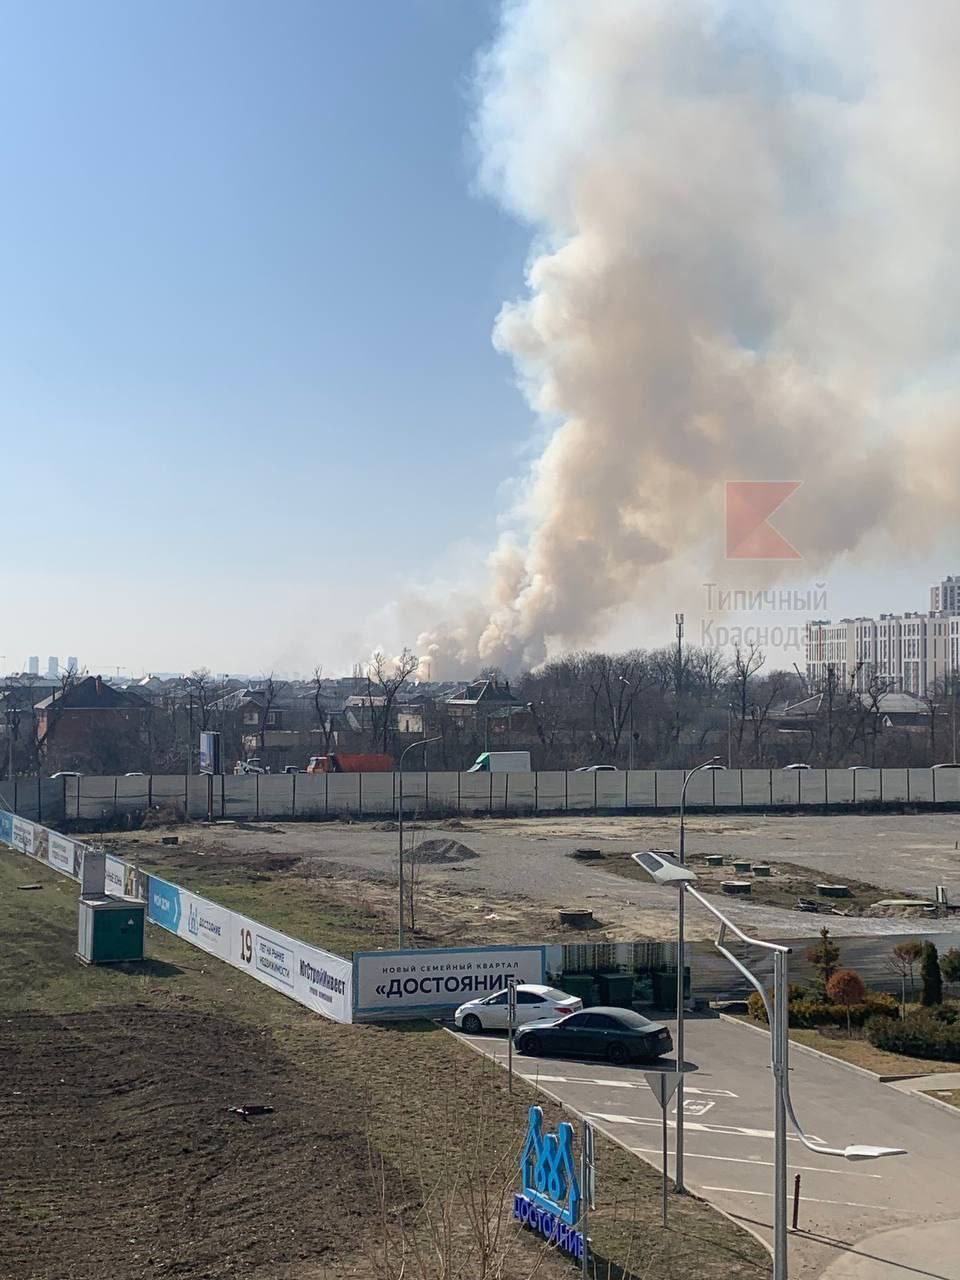 У Краснодарі на території льотного училища прогриміли вибухи, спалахнула пожежа. Фото